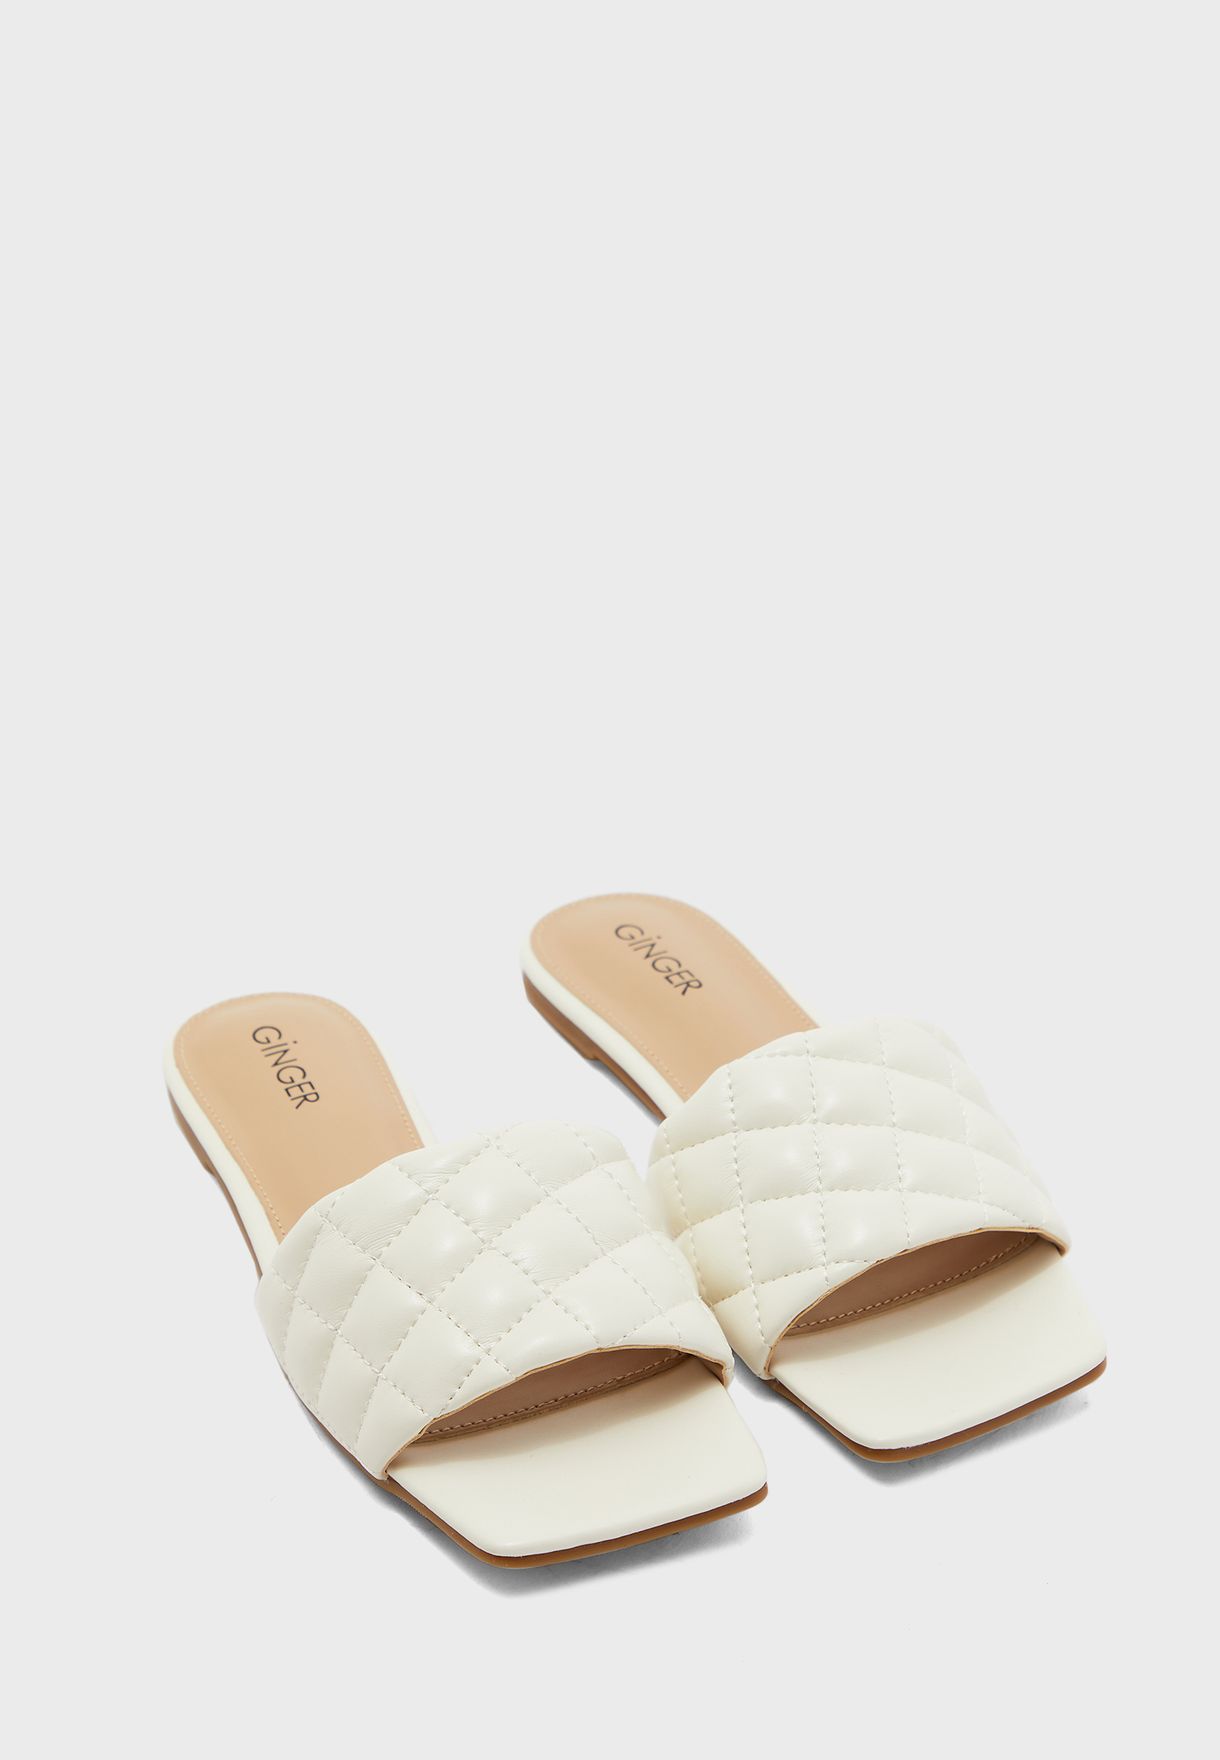 white slip on sandals flat